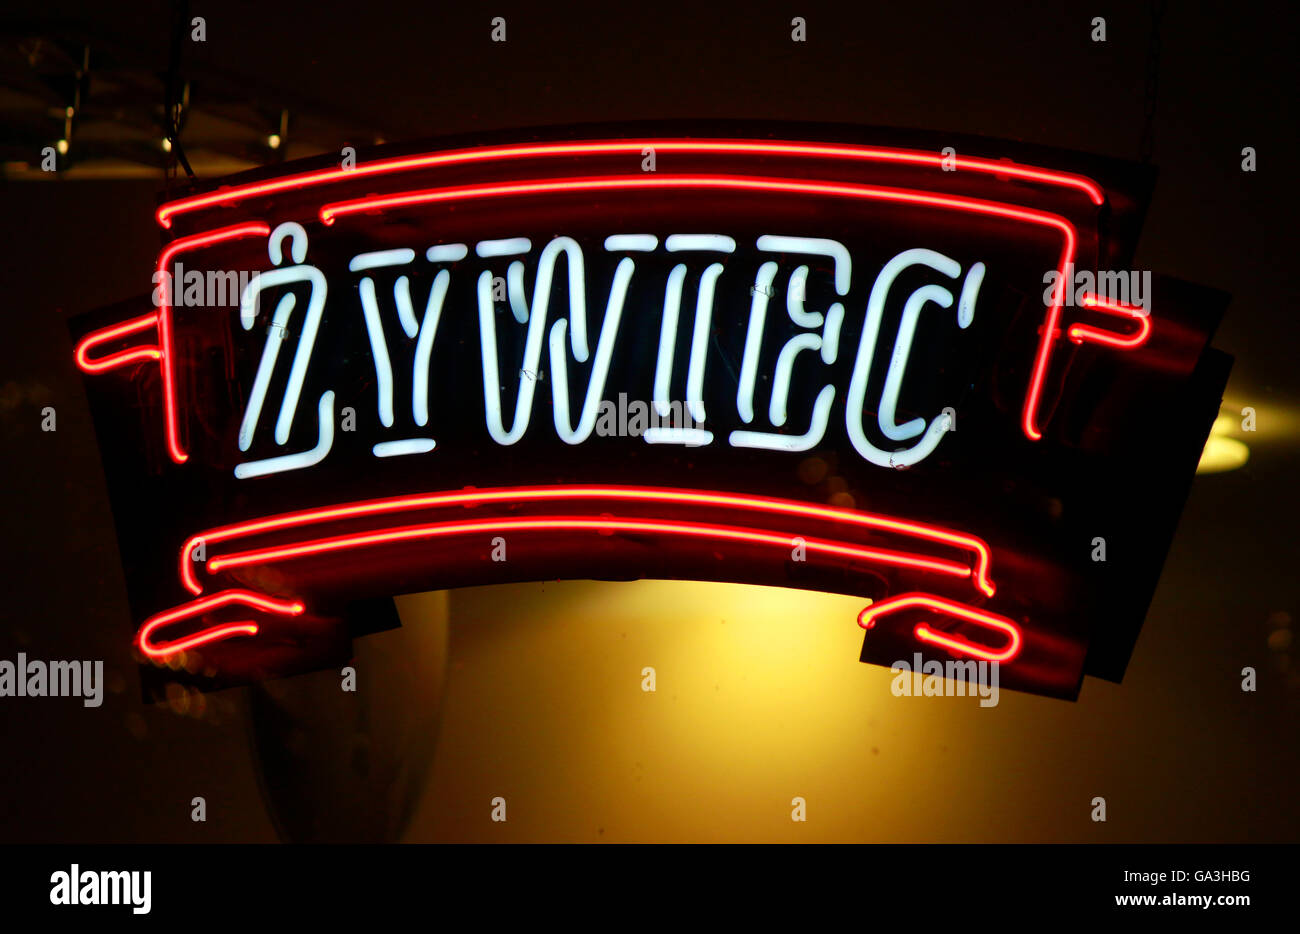 Das Logo der Marke 'Zywiec', Swinemuende, Polen . Foto Stock